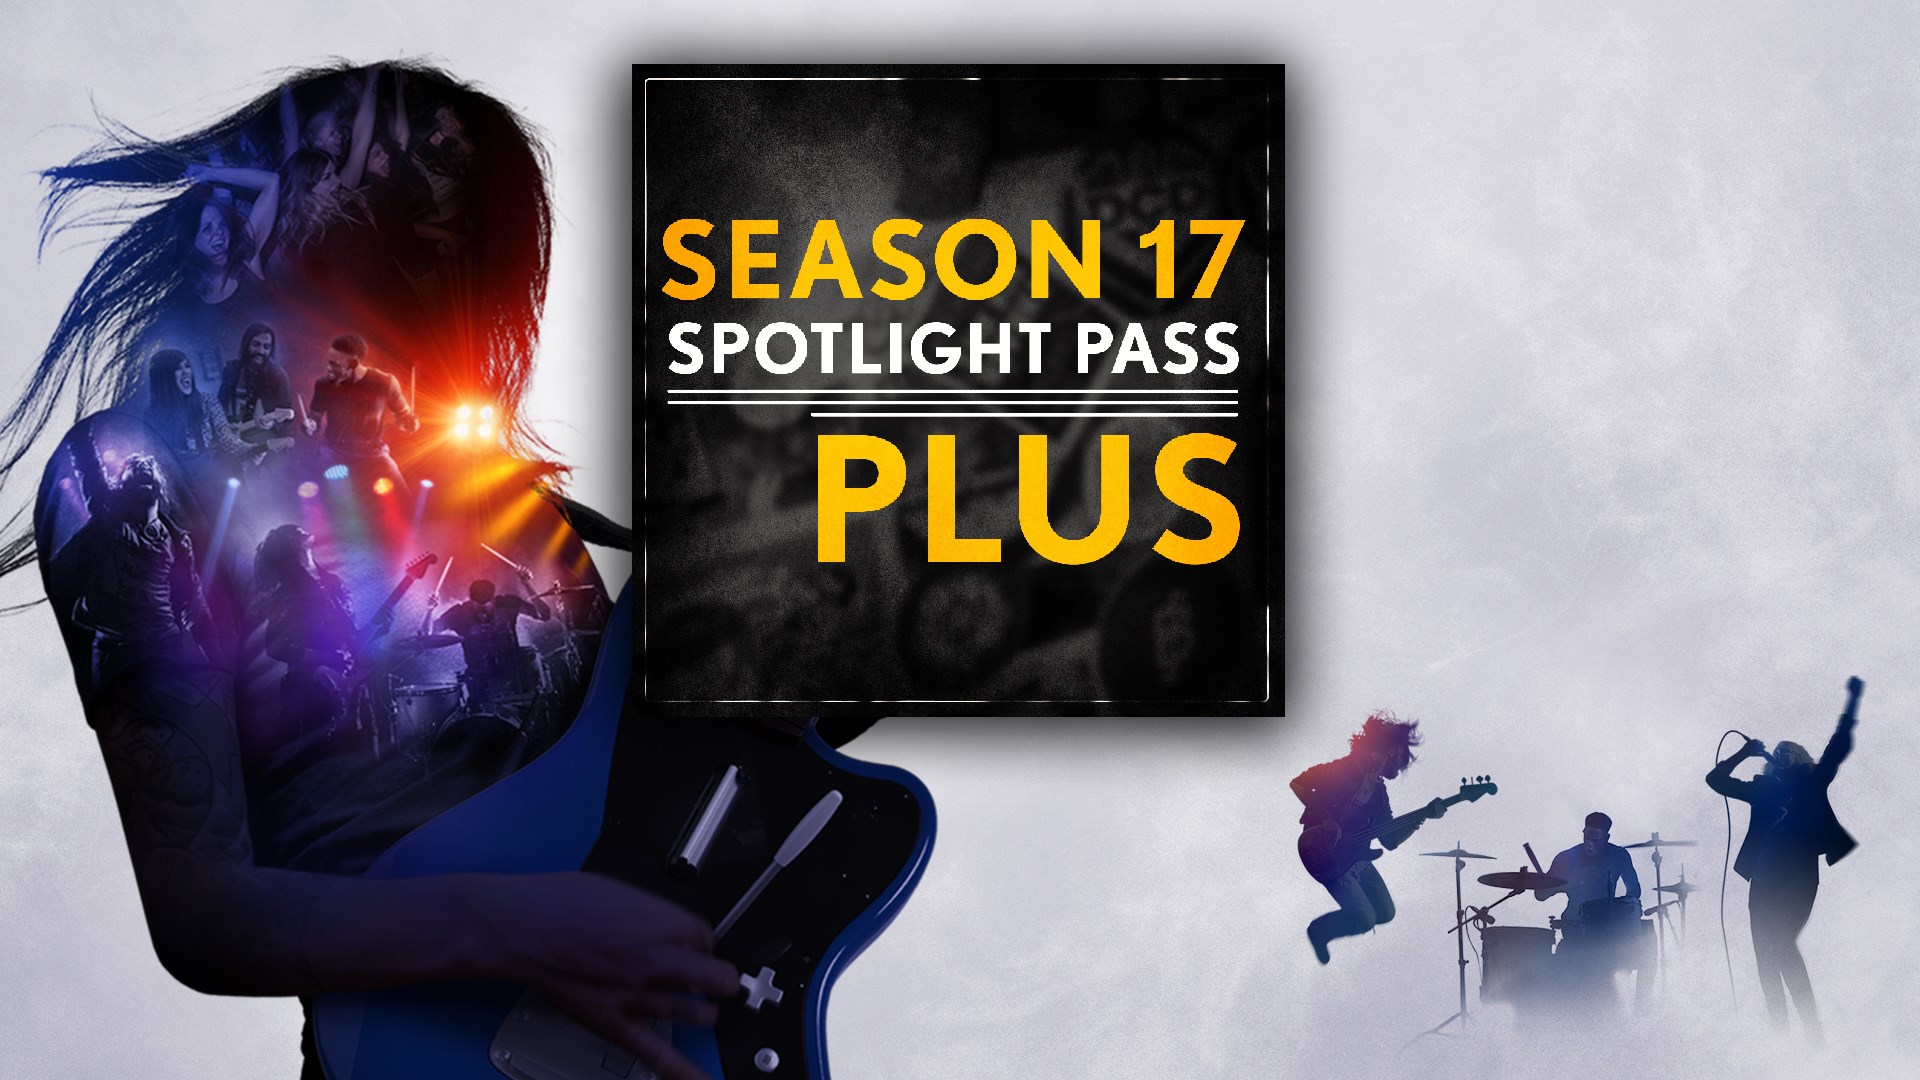 Season 17 Spotlight Pass Plus